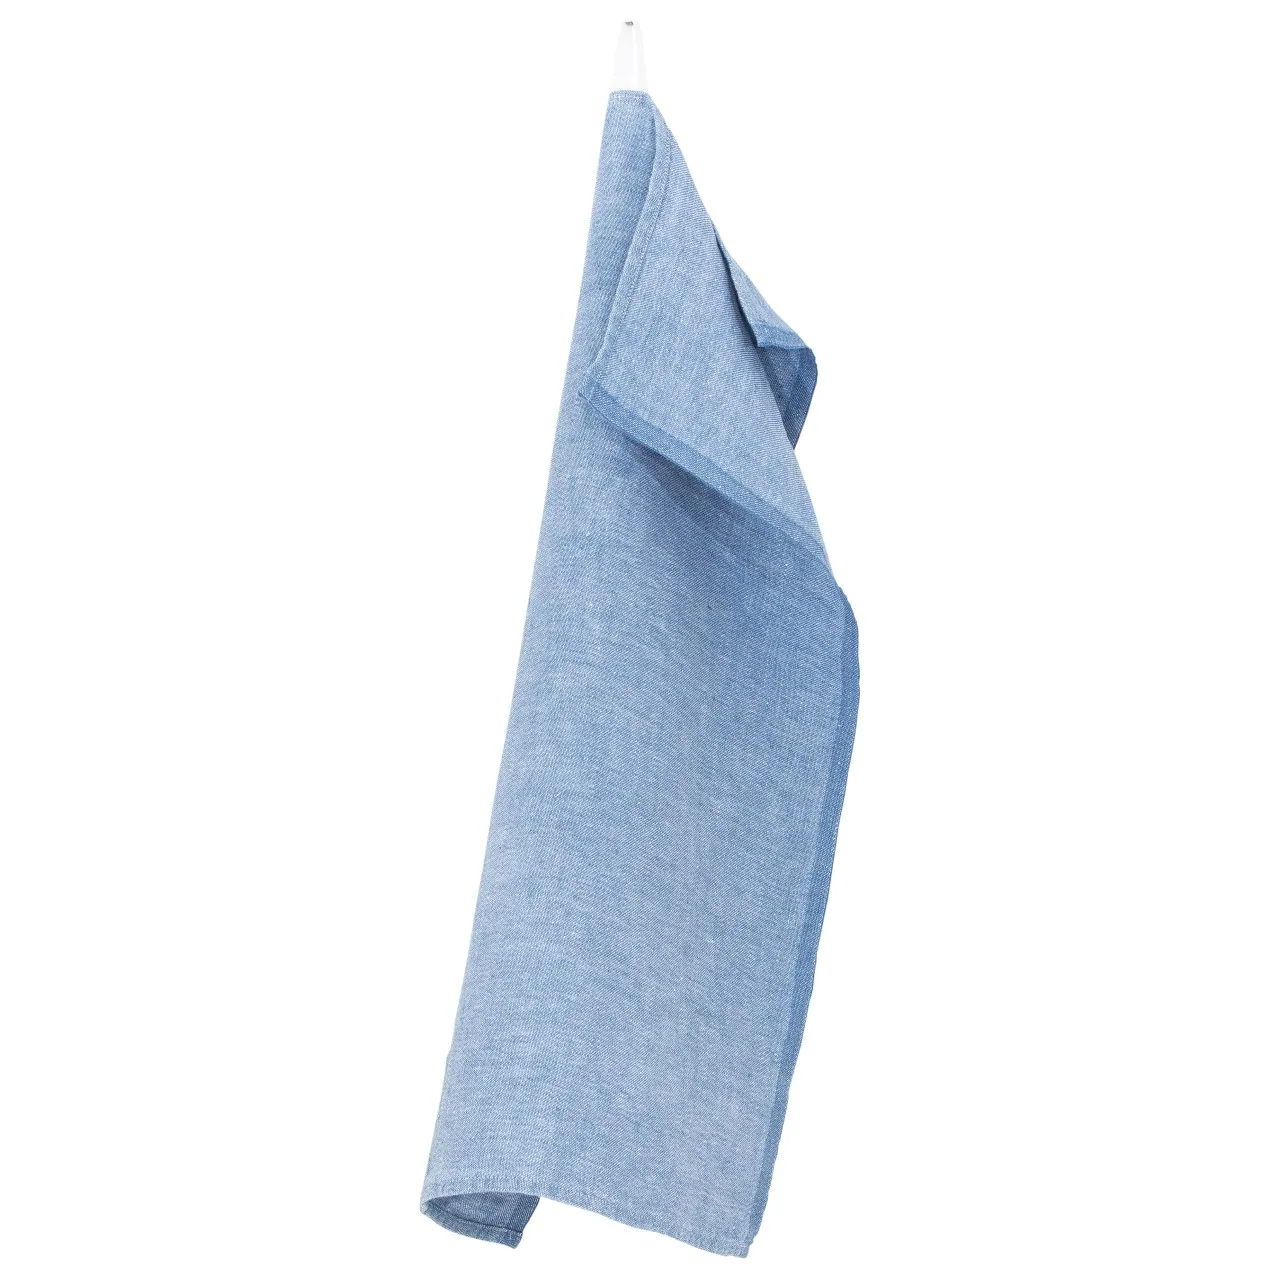 https://www.whitemotive.com/wp-content/uploads/2022/12/blue-tea-towel-mono-linen-towels-lapuan-kankurit-kitchen-towels-plain.webp